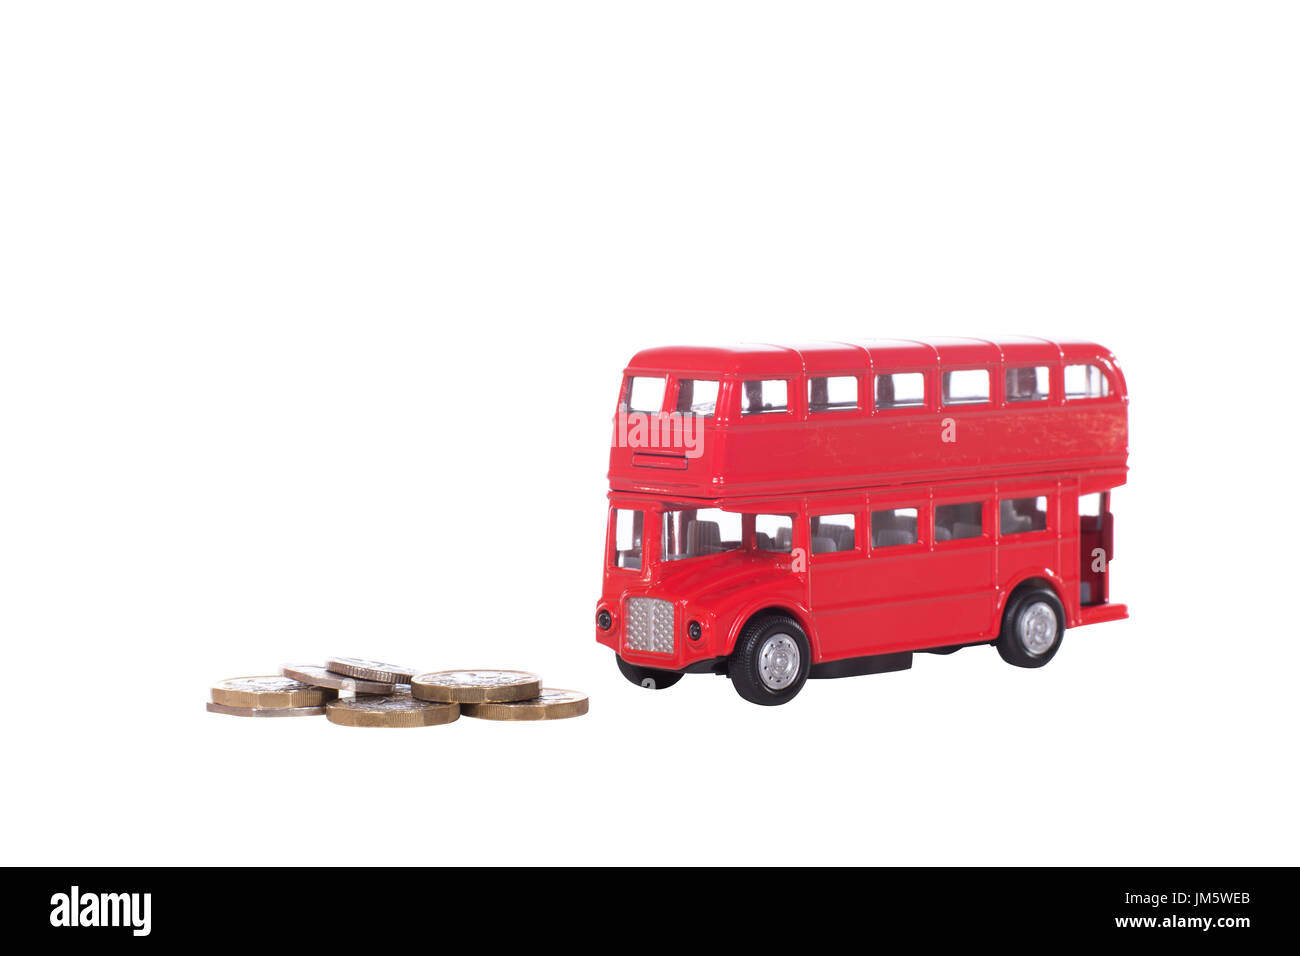 Monete in contanti con un modello red double-decker bus simbolica della British Transport e il costo di un viaggio isolato su bianco Foto Stock